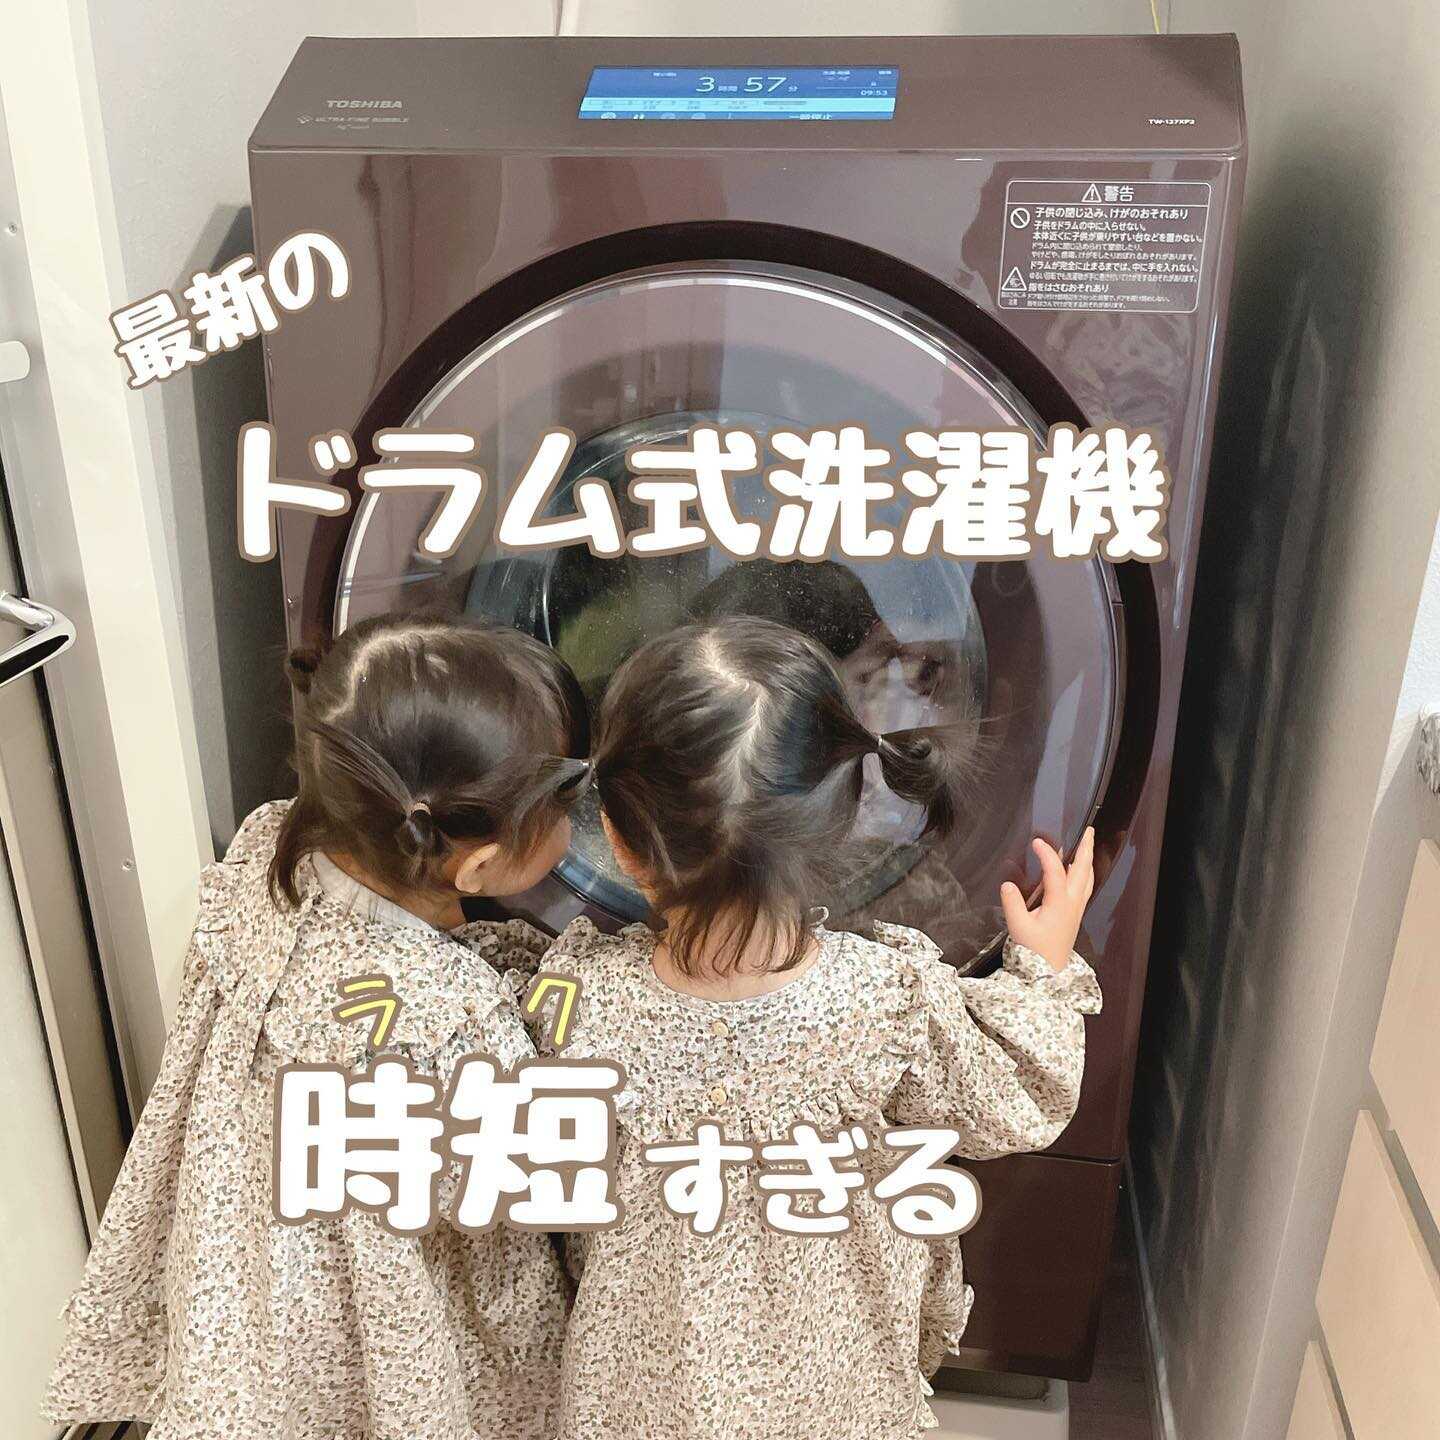 ドラム式洗濯機TOSHIBA TW-Z360L(W) - 洗濯機